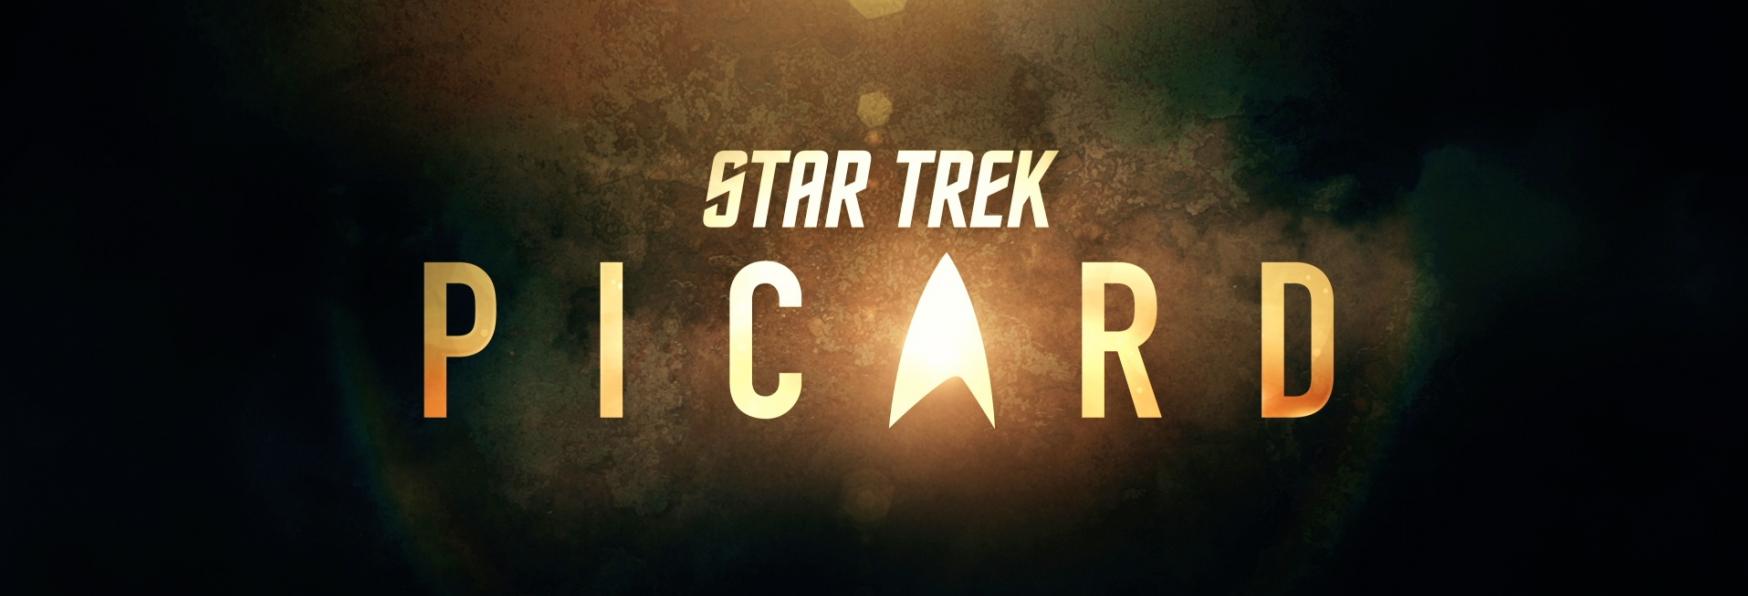 Star Trek: Picard 3 - la nuova Stagione cambierà l'intero Universo di Star Trek